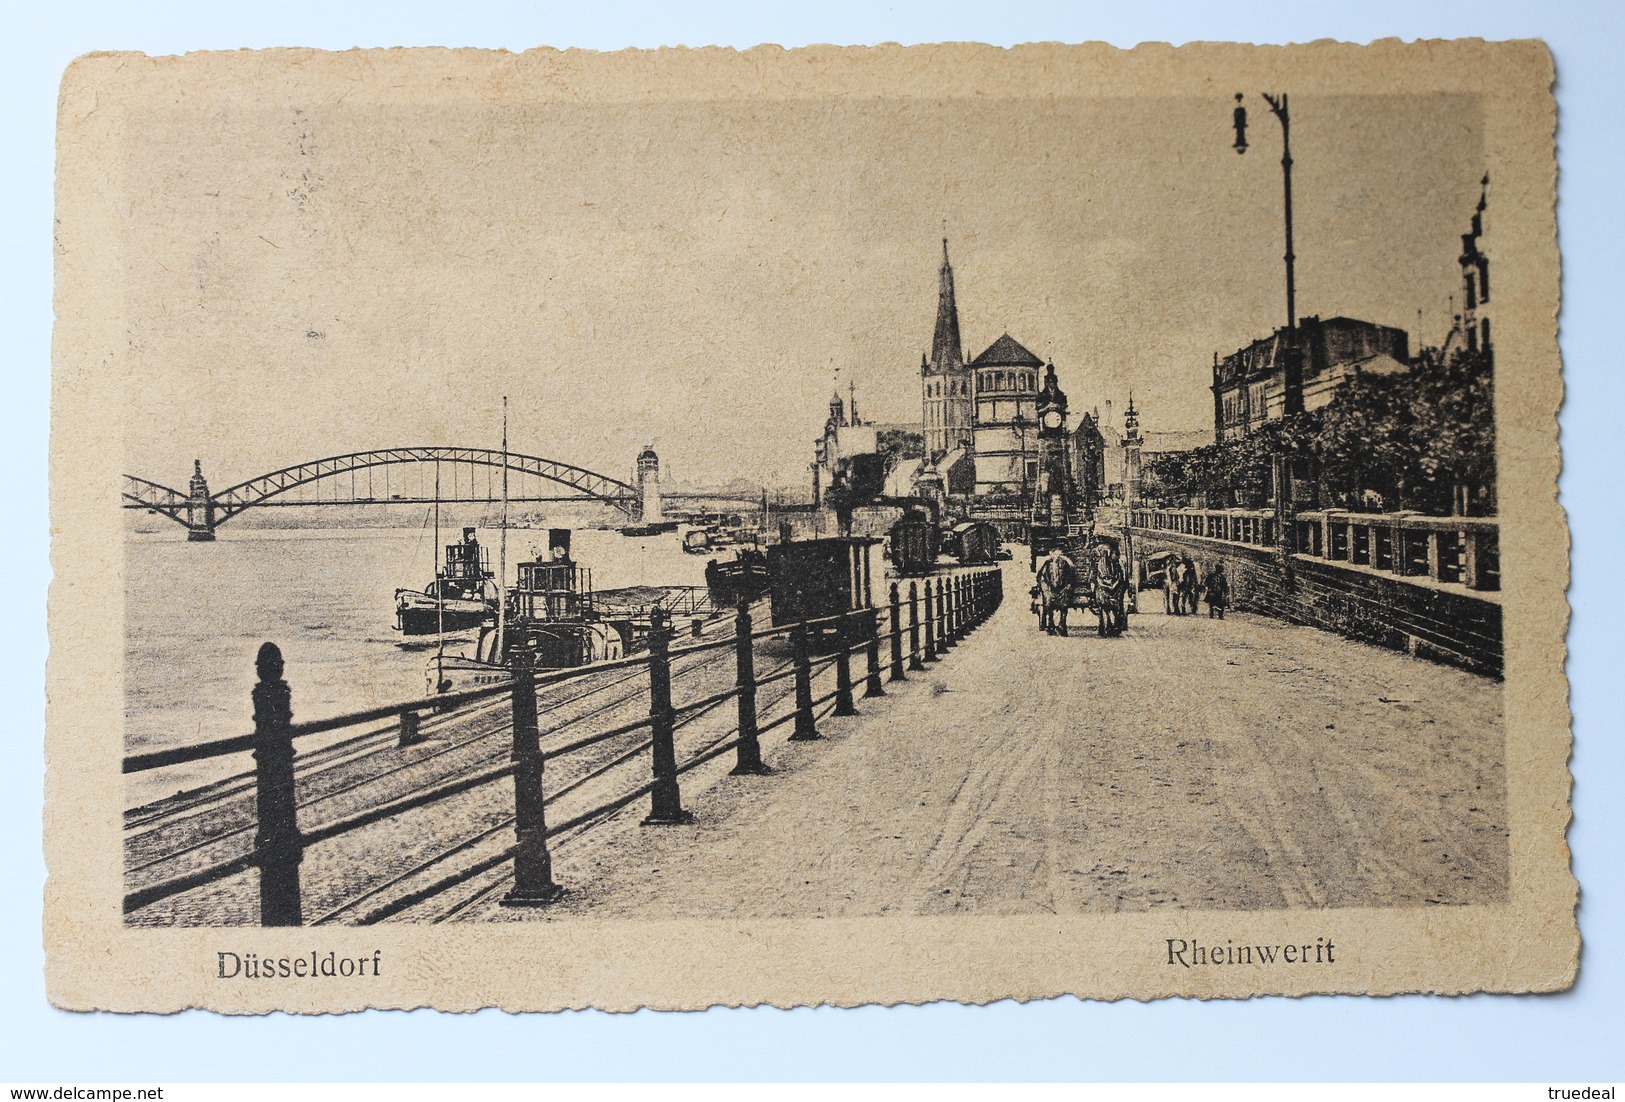 Rheinwerft, Düsseldorf, Deutschland Germany, 1920s - Duesseldorf